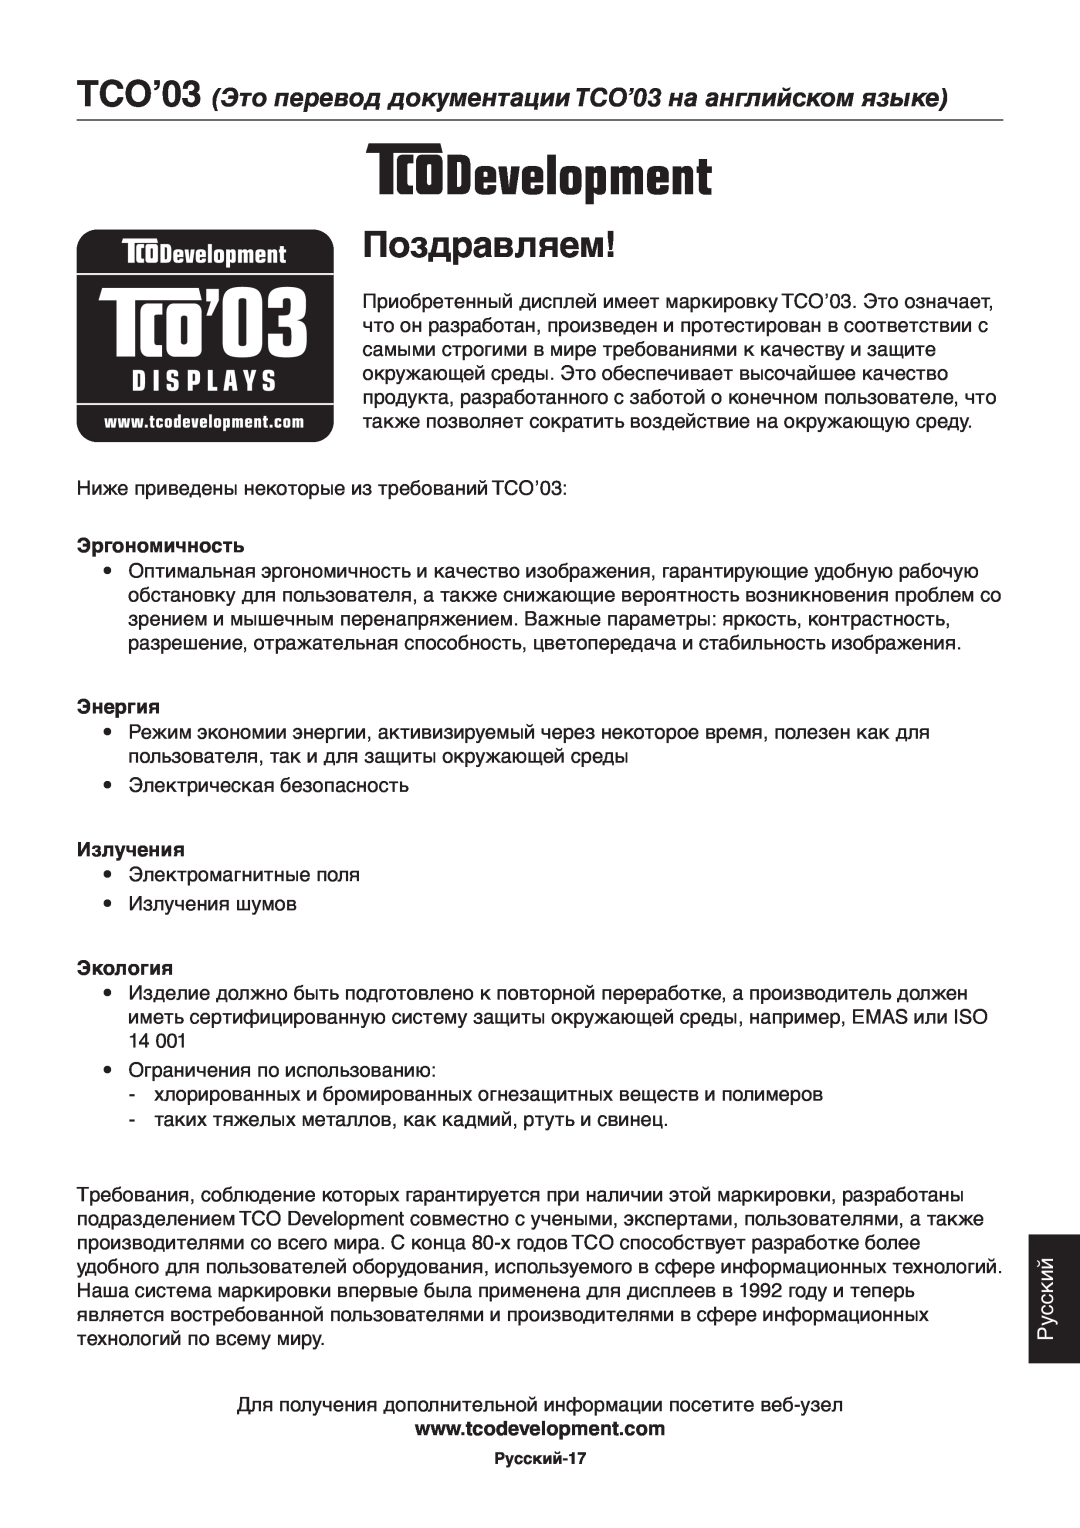 NEC ACCUSYNC LCD73V, ACCUSYNC LCD93V manual Поздравляем, Русский, Эргономичность, Энергия, Излучения, Экология 